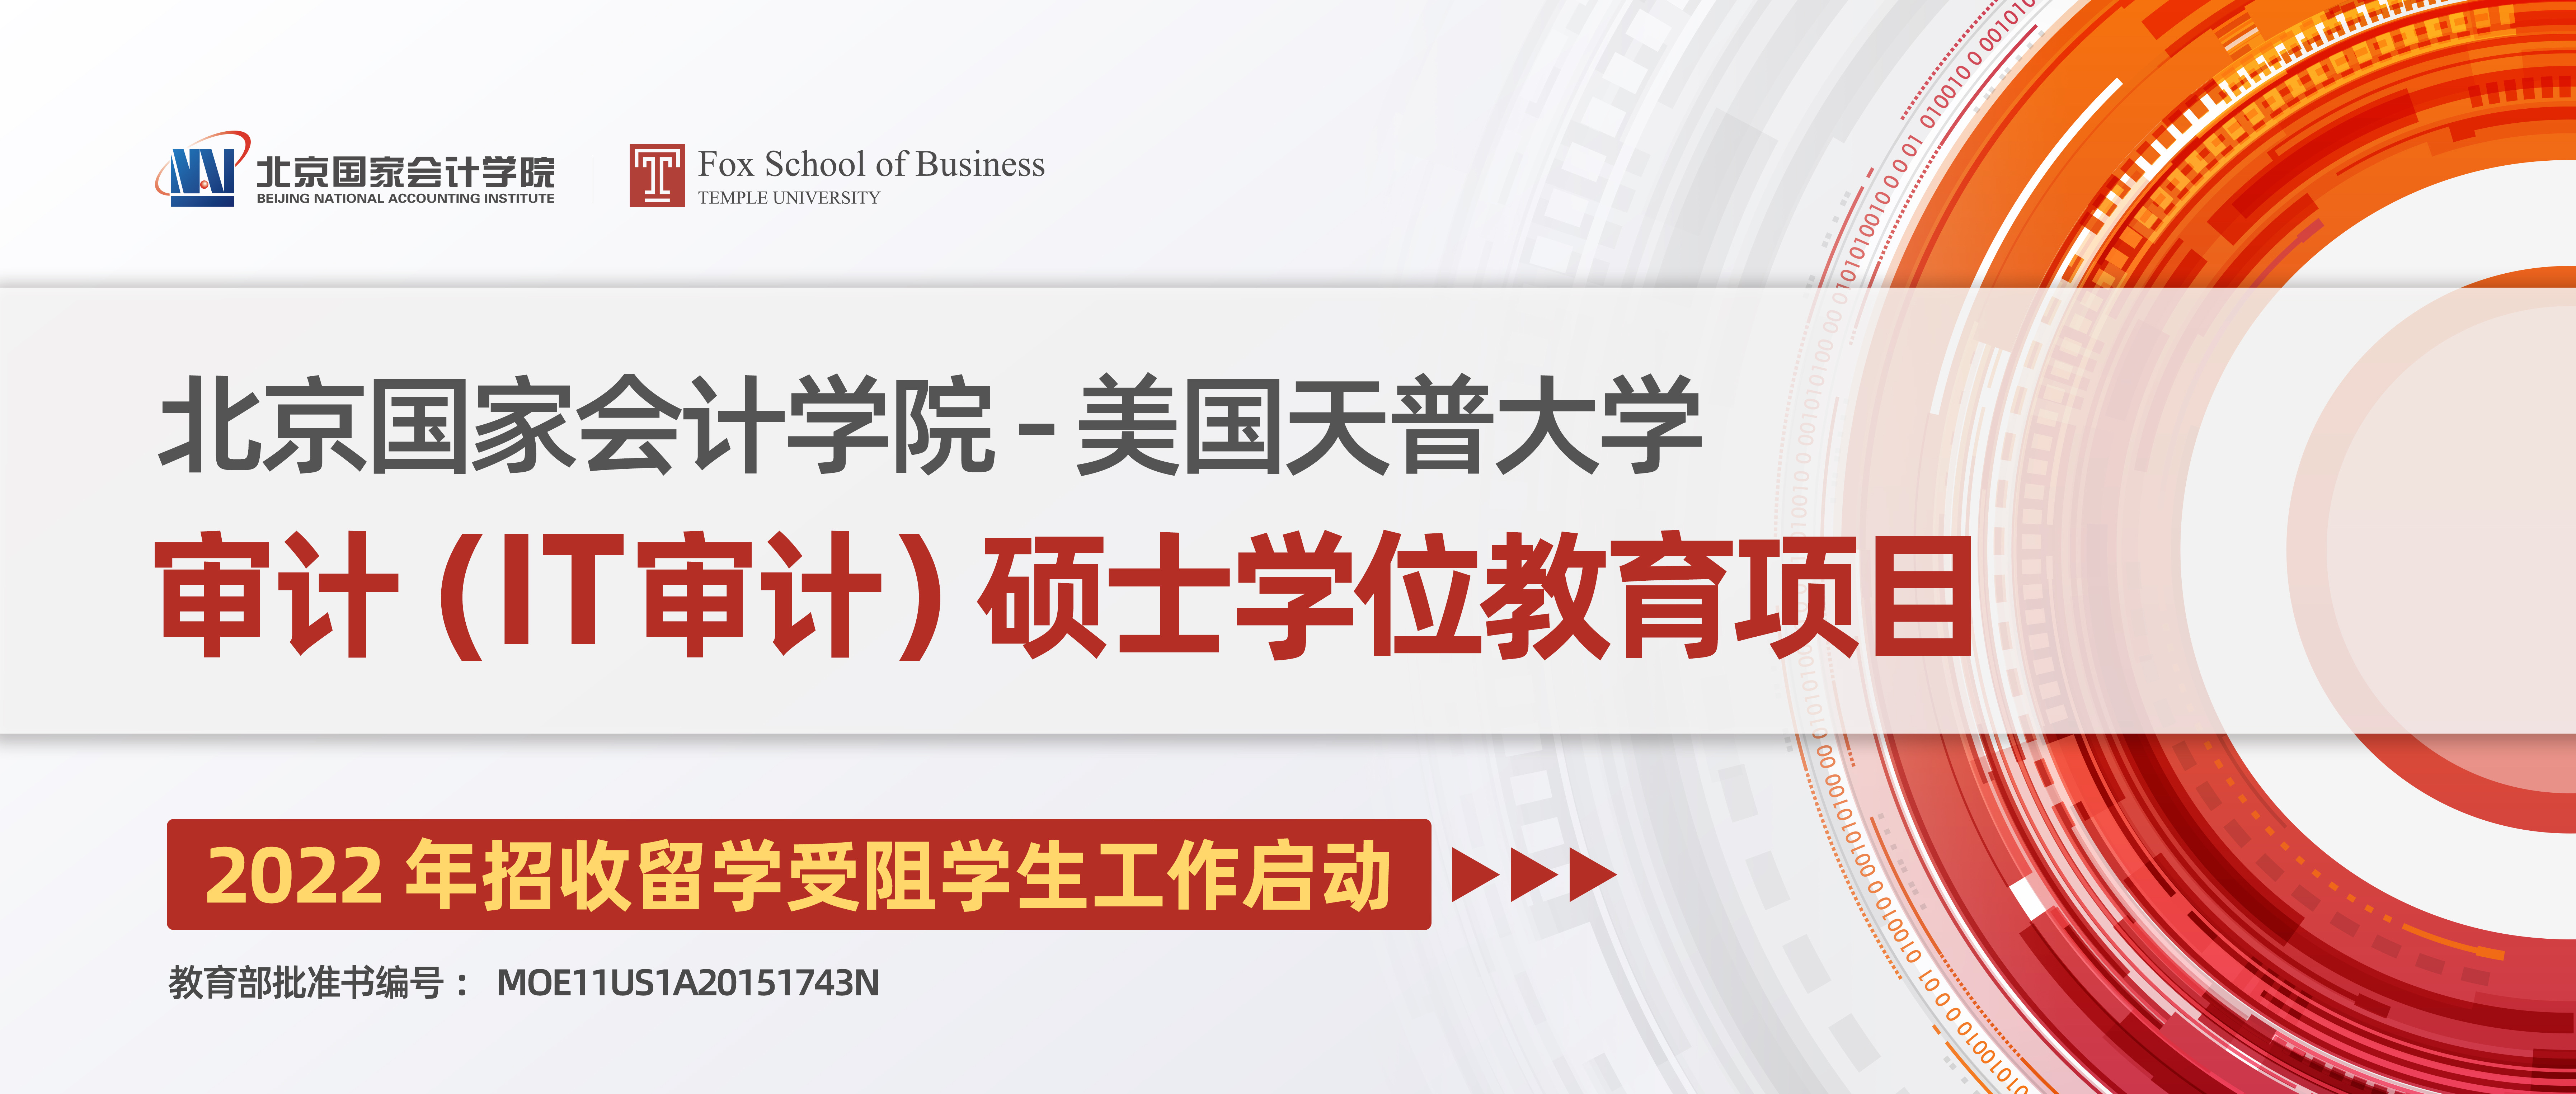 威斯尼斯人wns888入口中国与美国天普大学合作举办审计（IT审计）硕士学位教育项目招生简章 (第六期班自主招生名额)